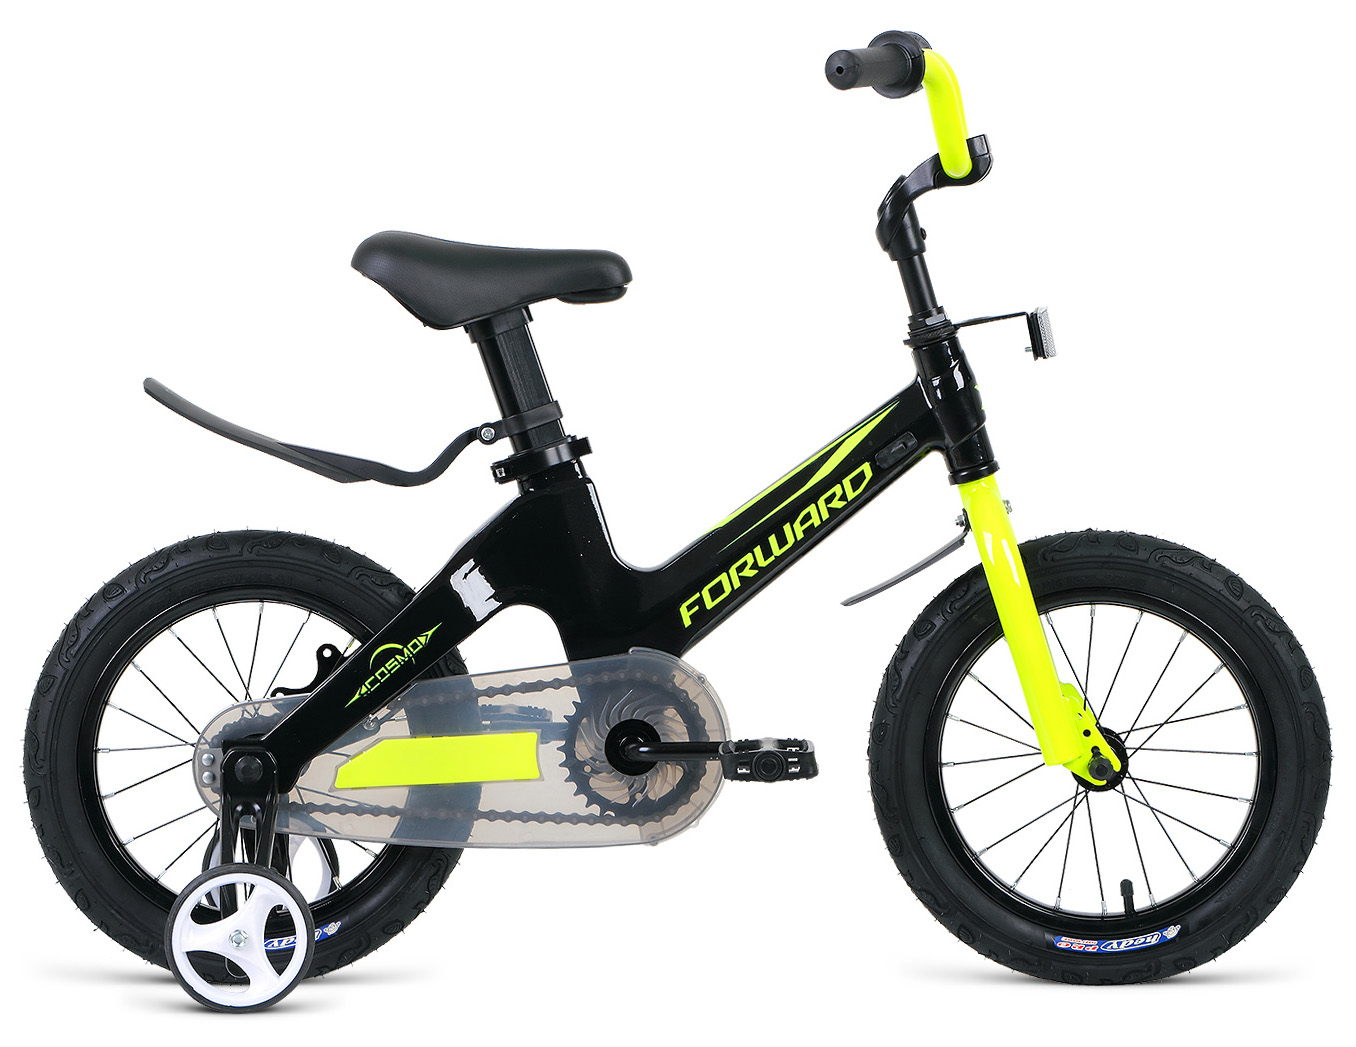  Отзывы о Детском велосипеде Forward Cosmo 12 2020 2020